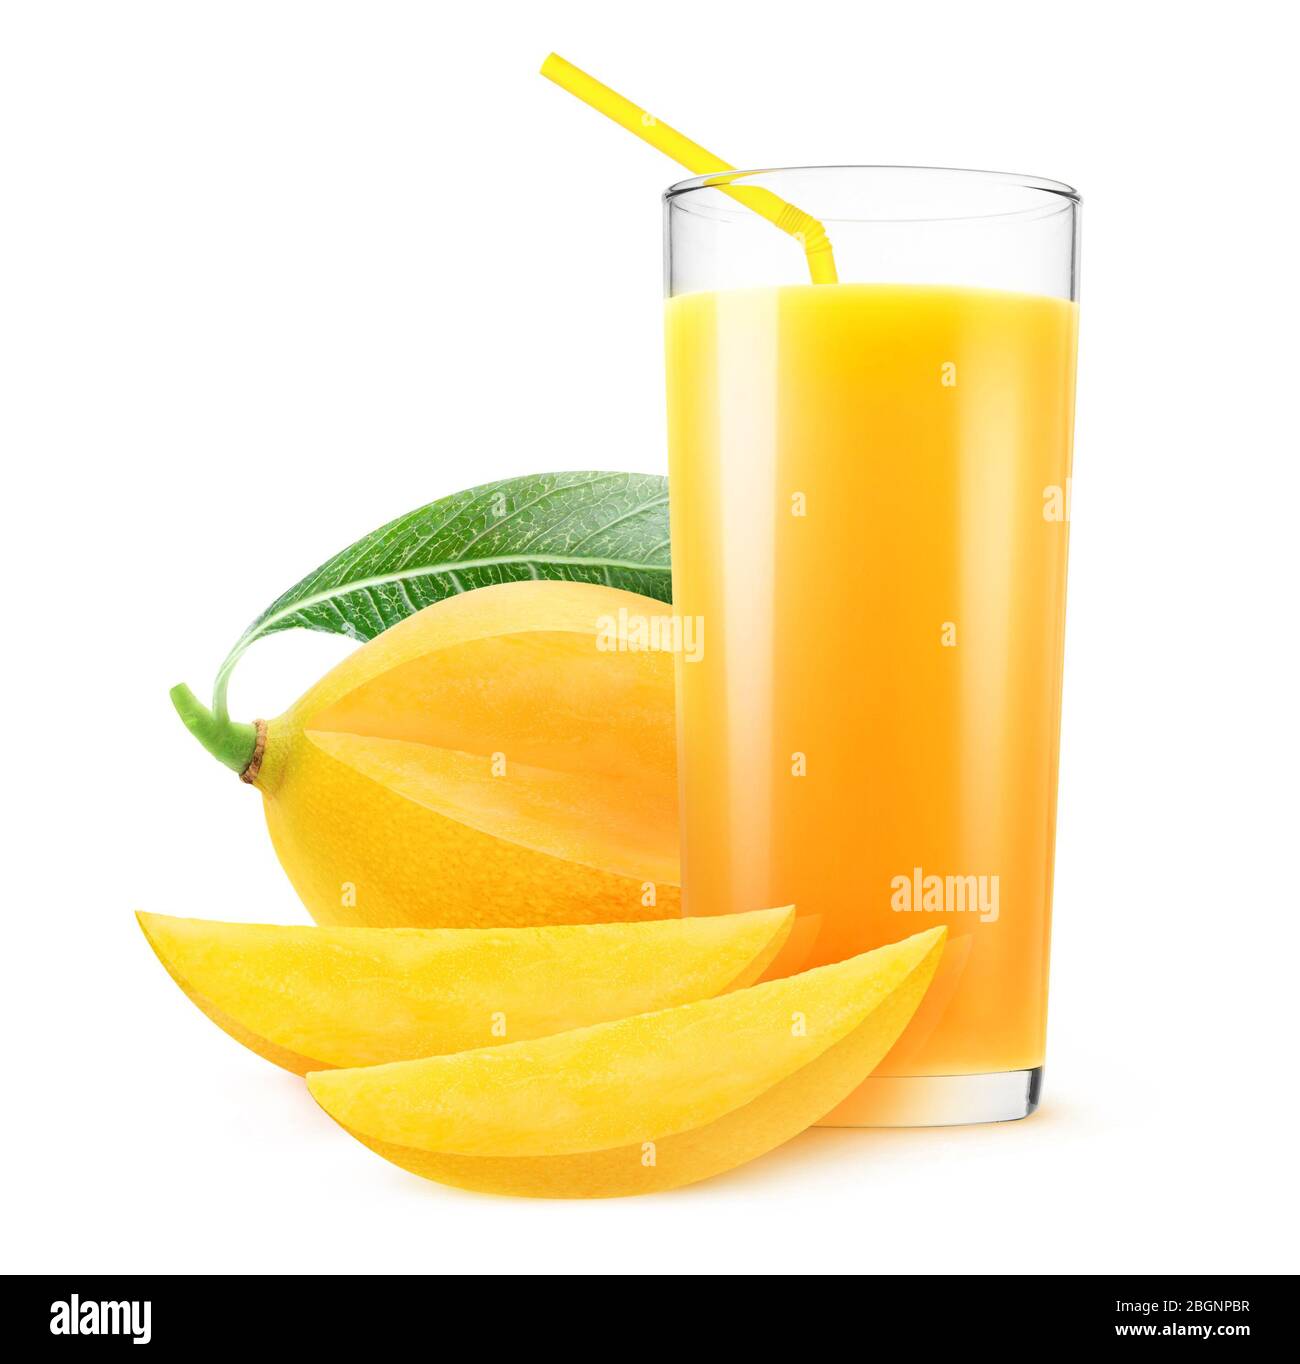 Jus de fruits isolés. Couper la mangue jaune et le verre de boisson à la mangue isolé sur fond blanc Banque D'Images